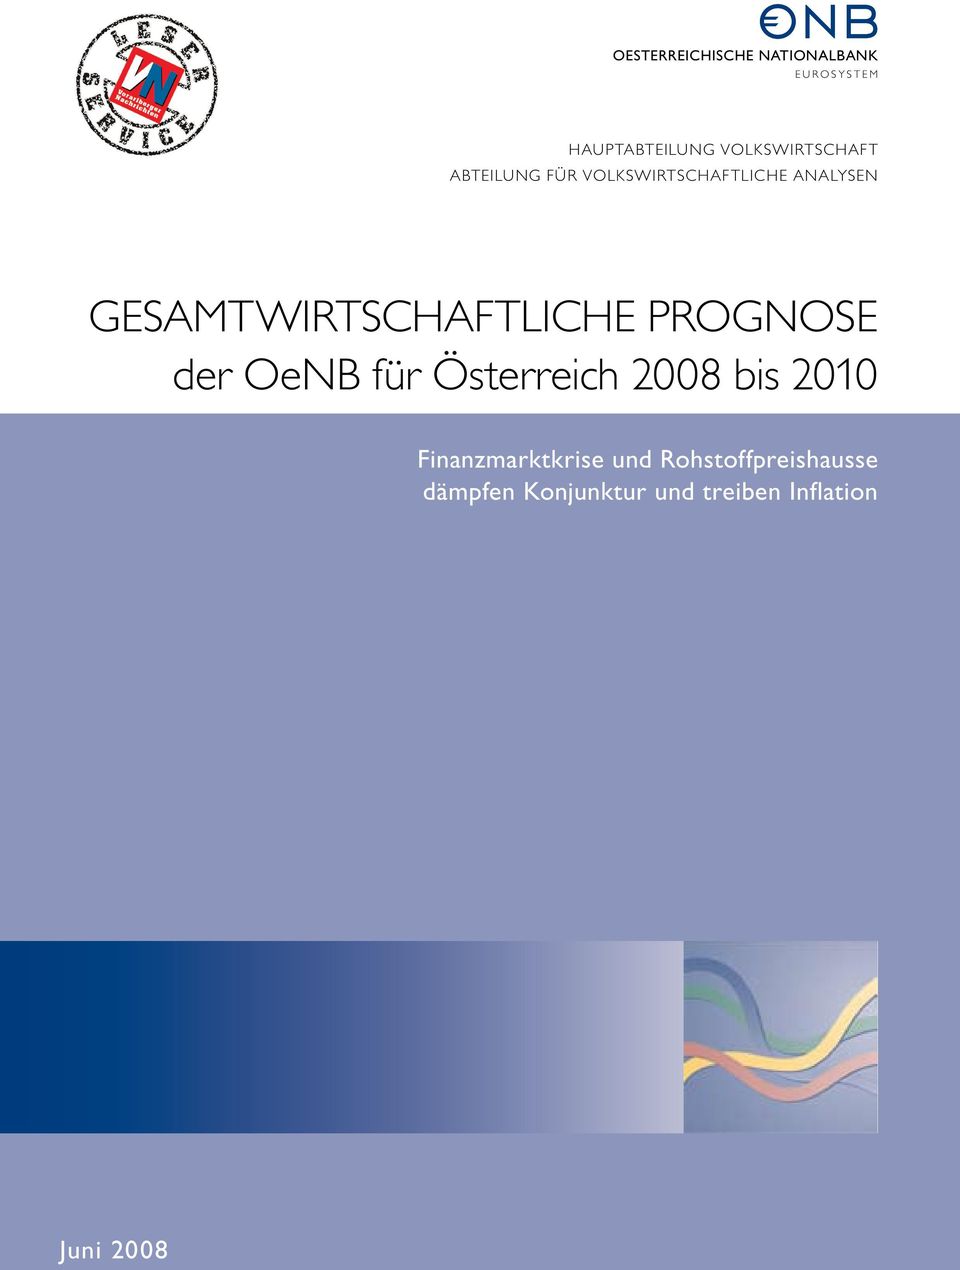 GESAMTWIRTSCHAFTLICHE PROGNOSE der OeNB für Österreich 2008 bis 2010